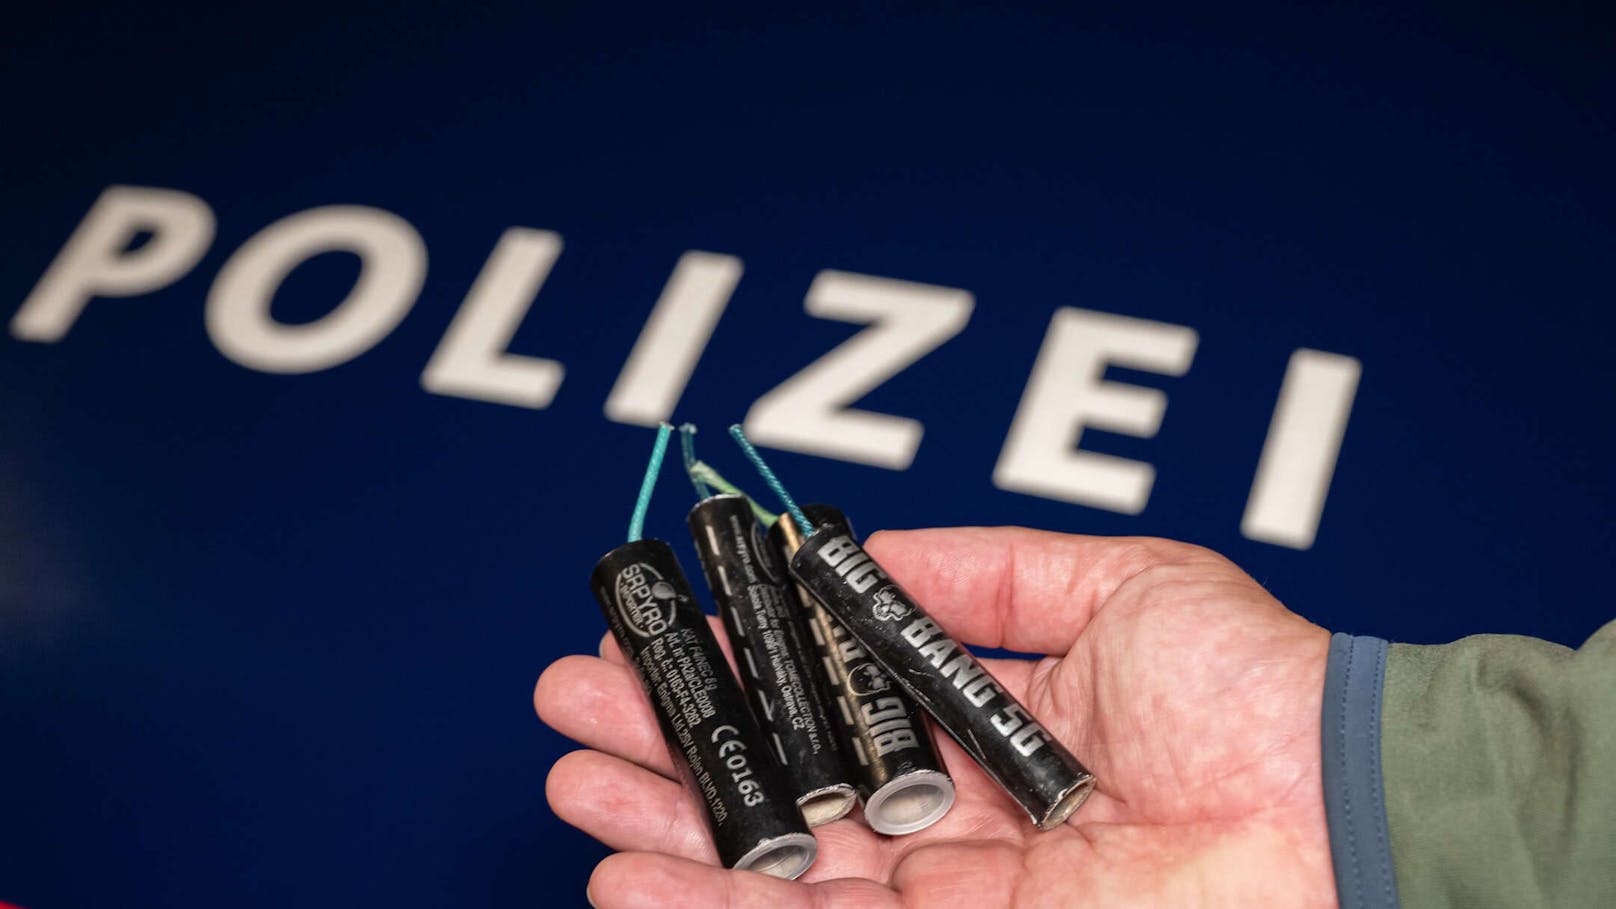 Die Polizei konnte die verwendeten Böller sicherstellen.